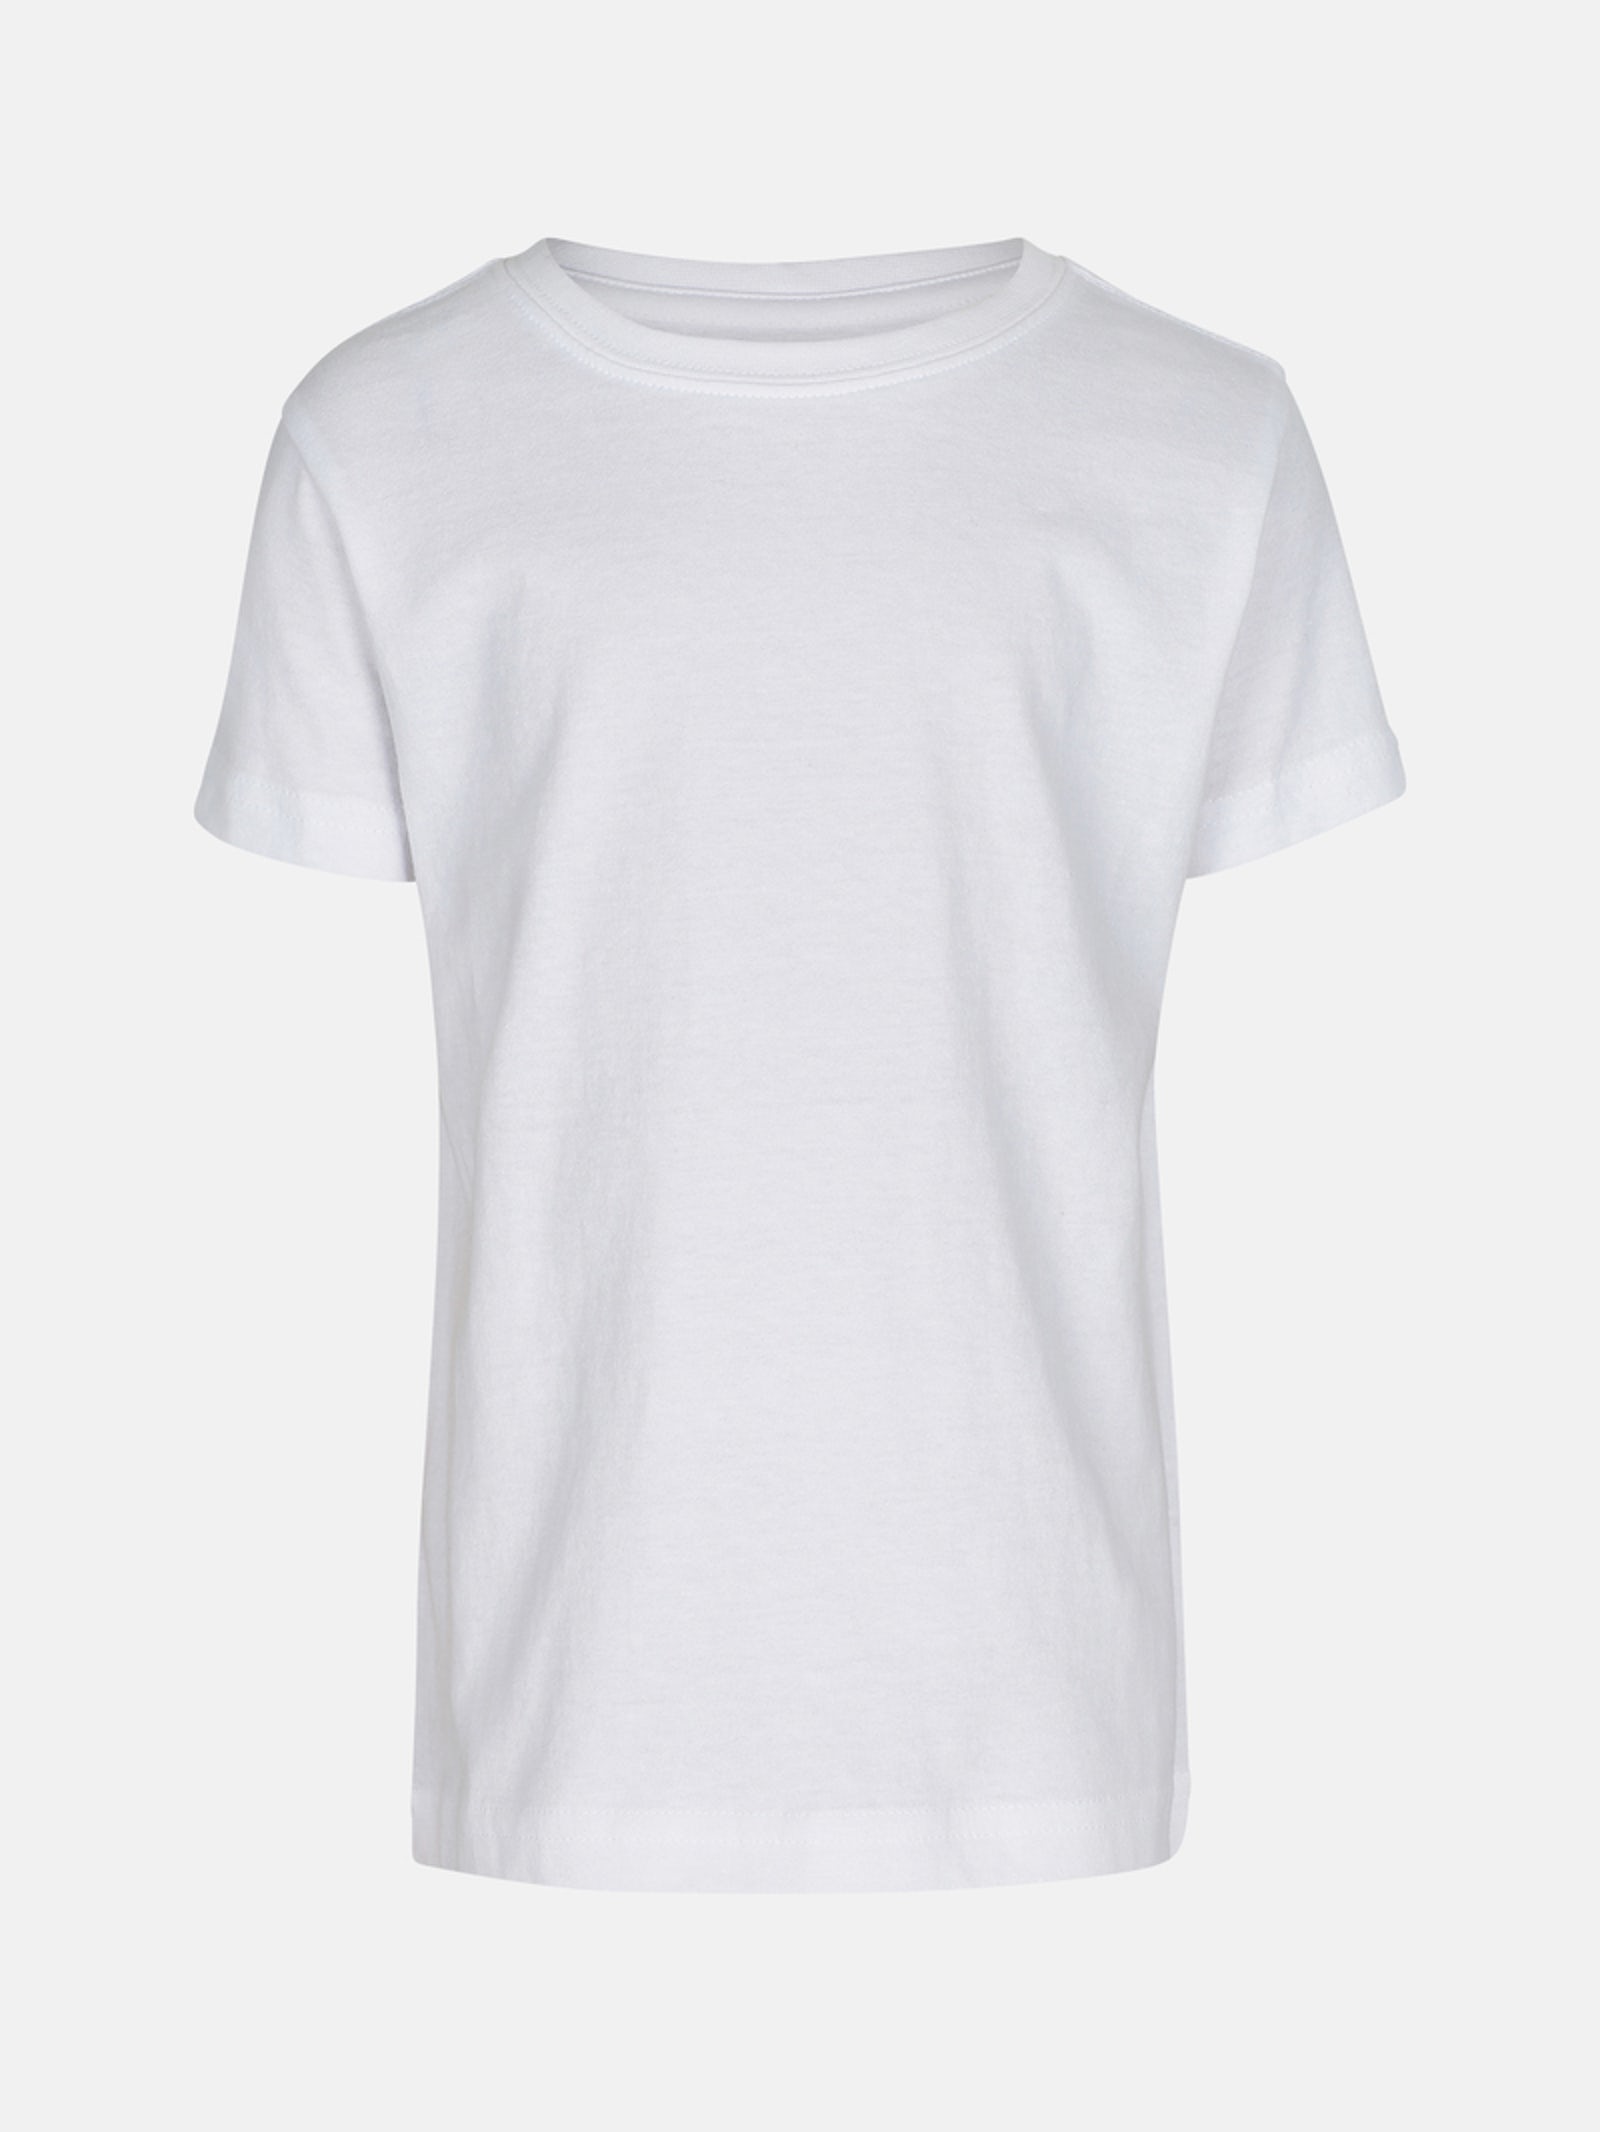 Hvit t-skjorte i 100% bomull